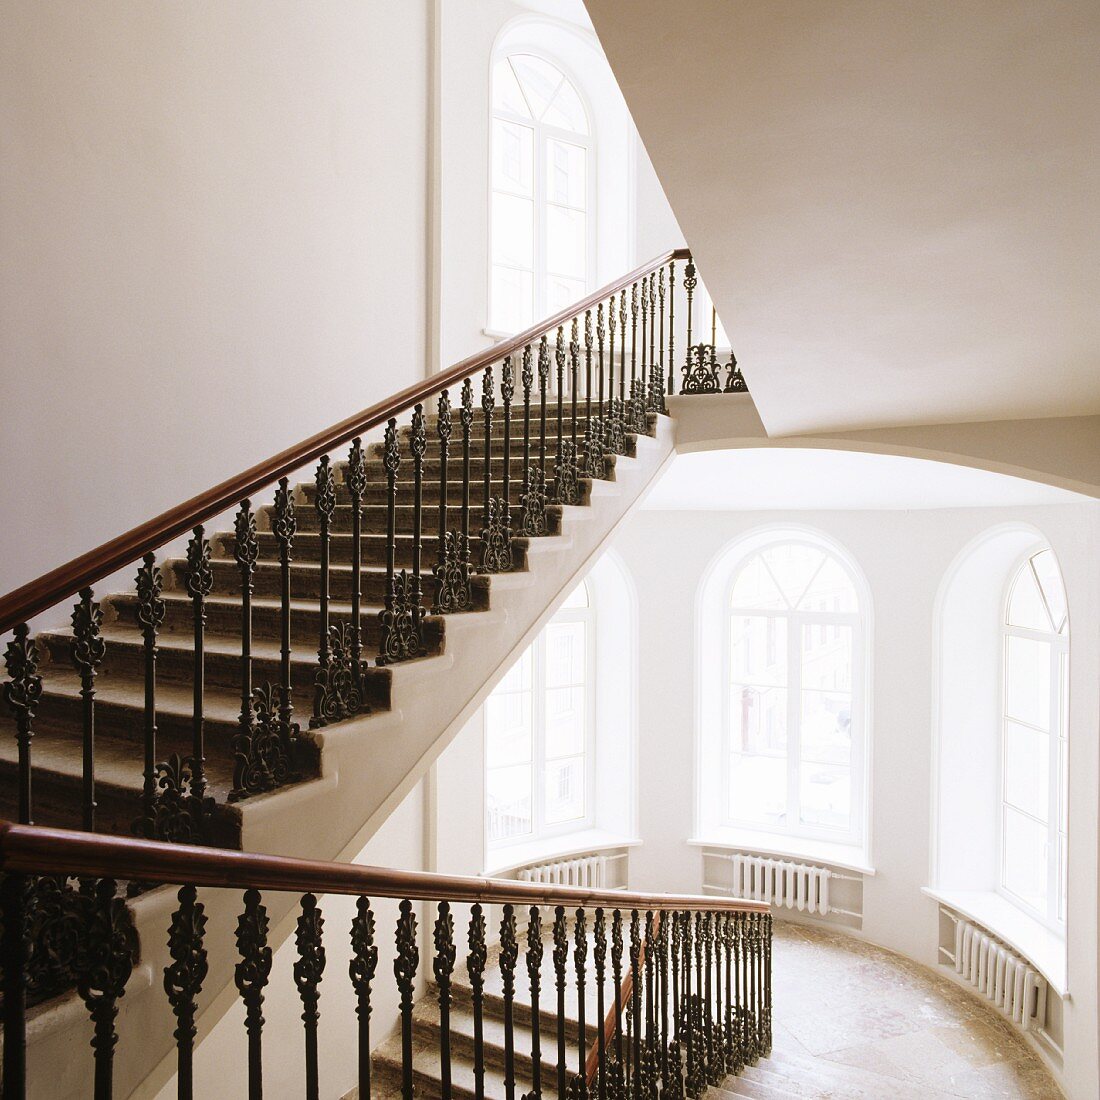 Herrschaftliches Treppenhaus - Schmiedeeisernes Geländer an Treppenlauf und hohe Rundbogenfenster auf Podestebene